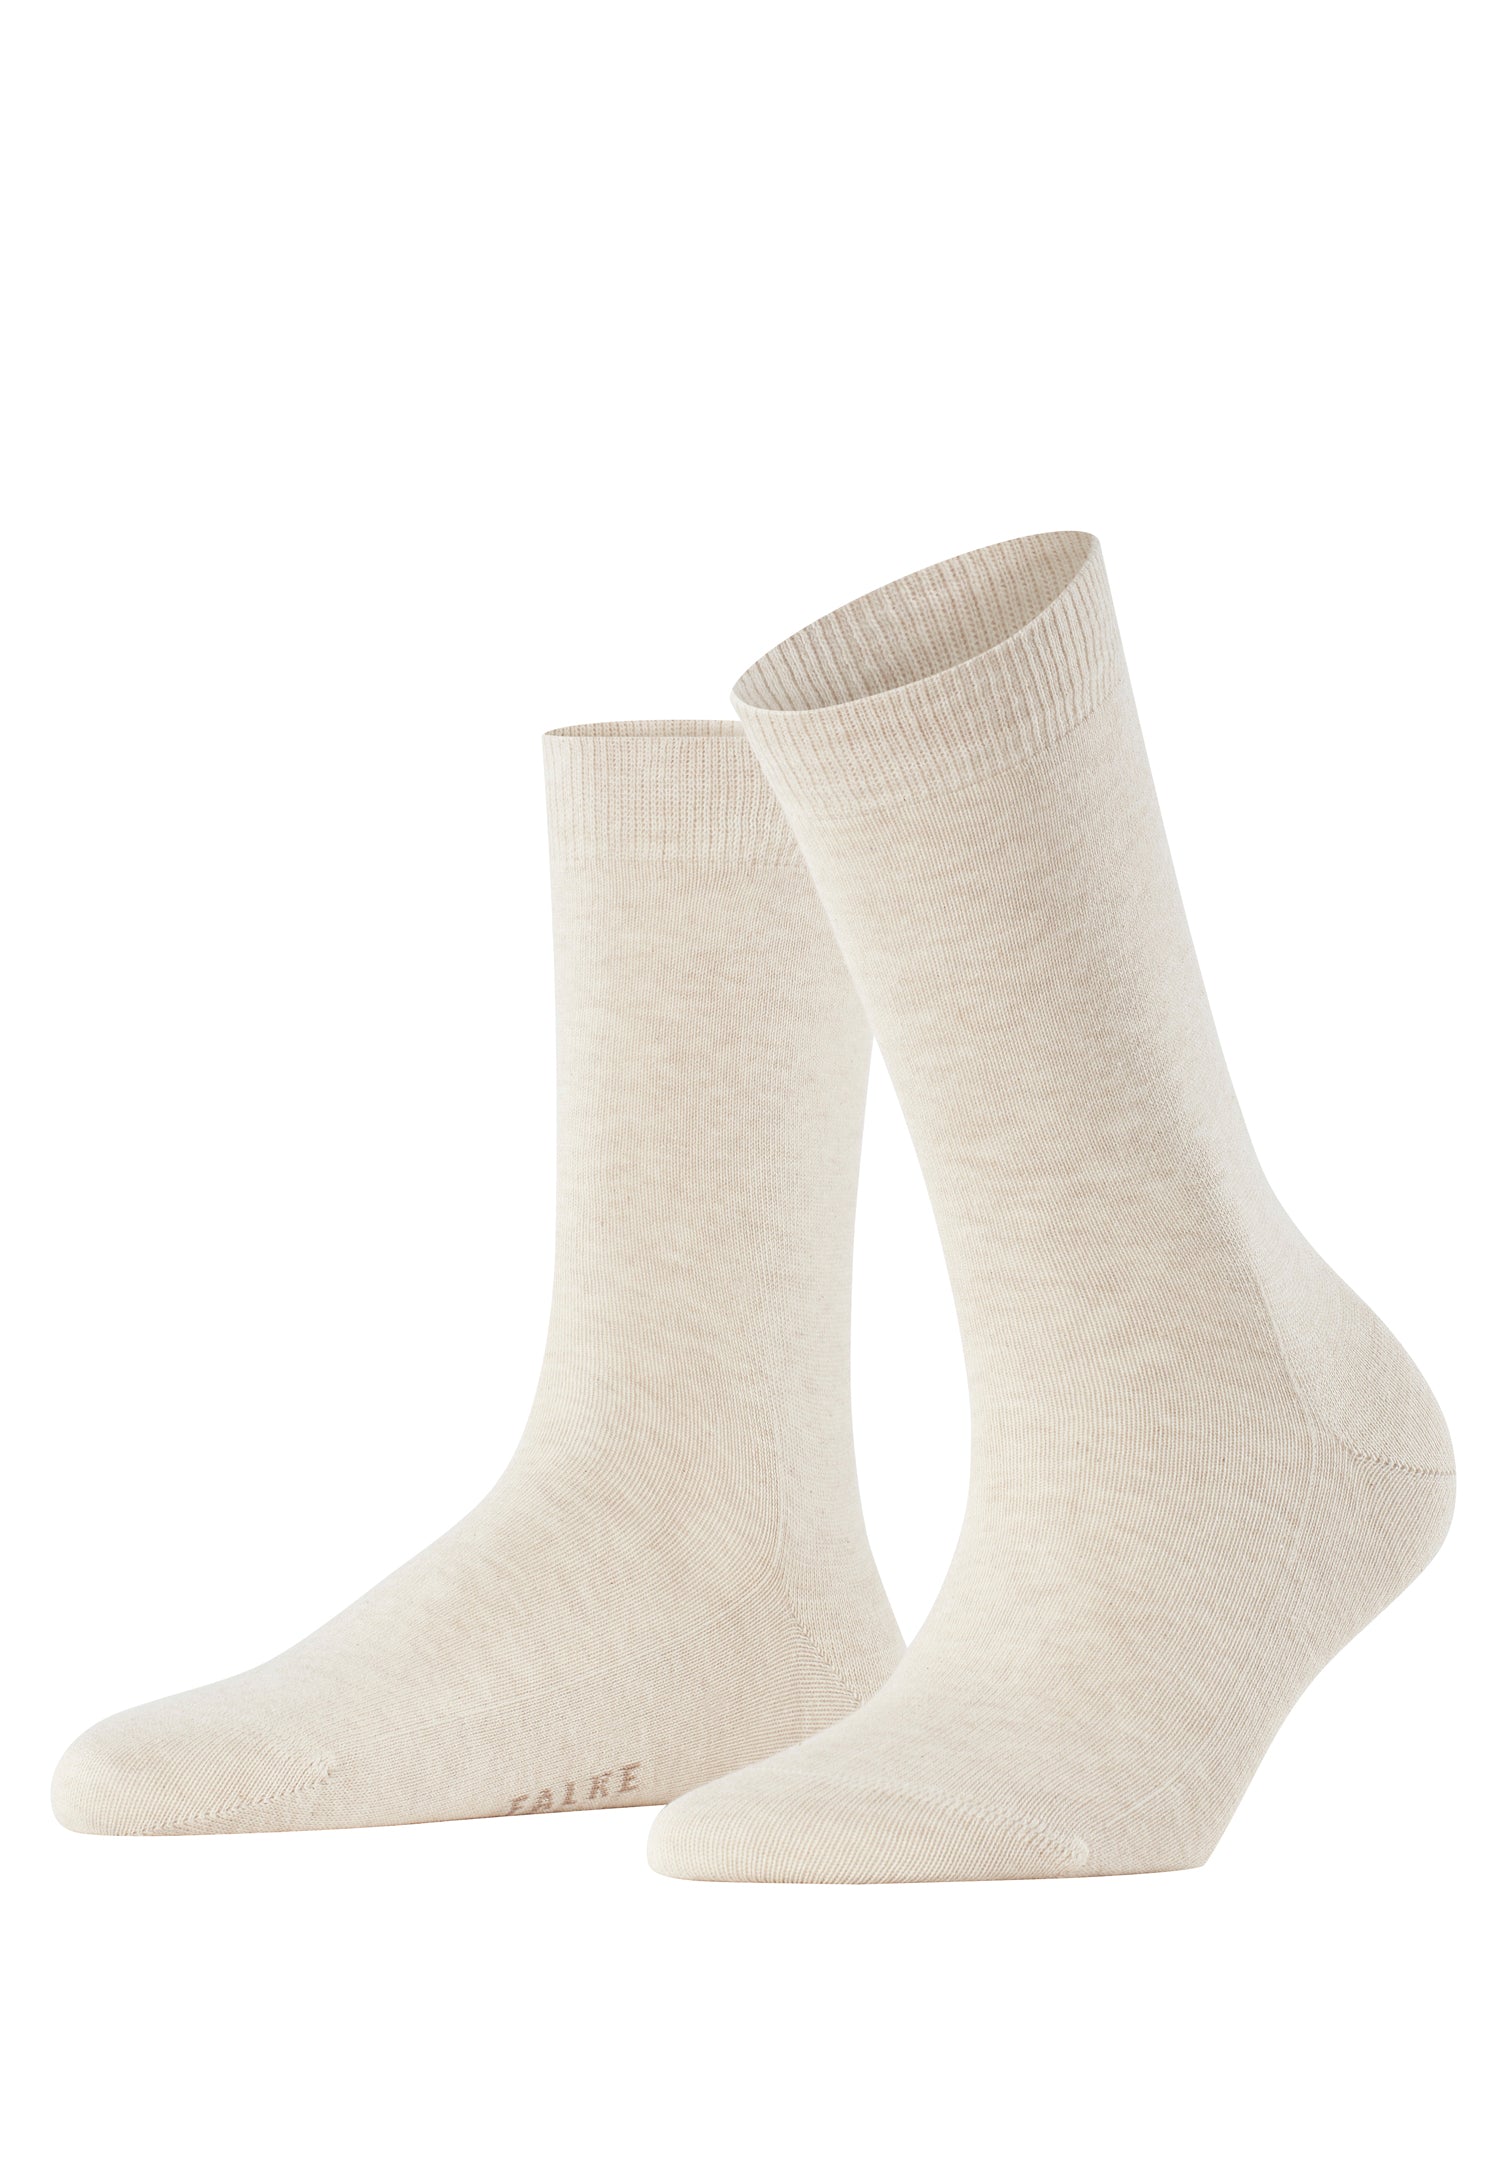 46490 Family Sock Sock - 4659 Sand Melange